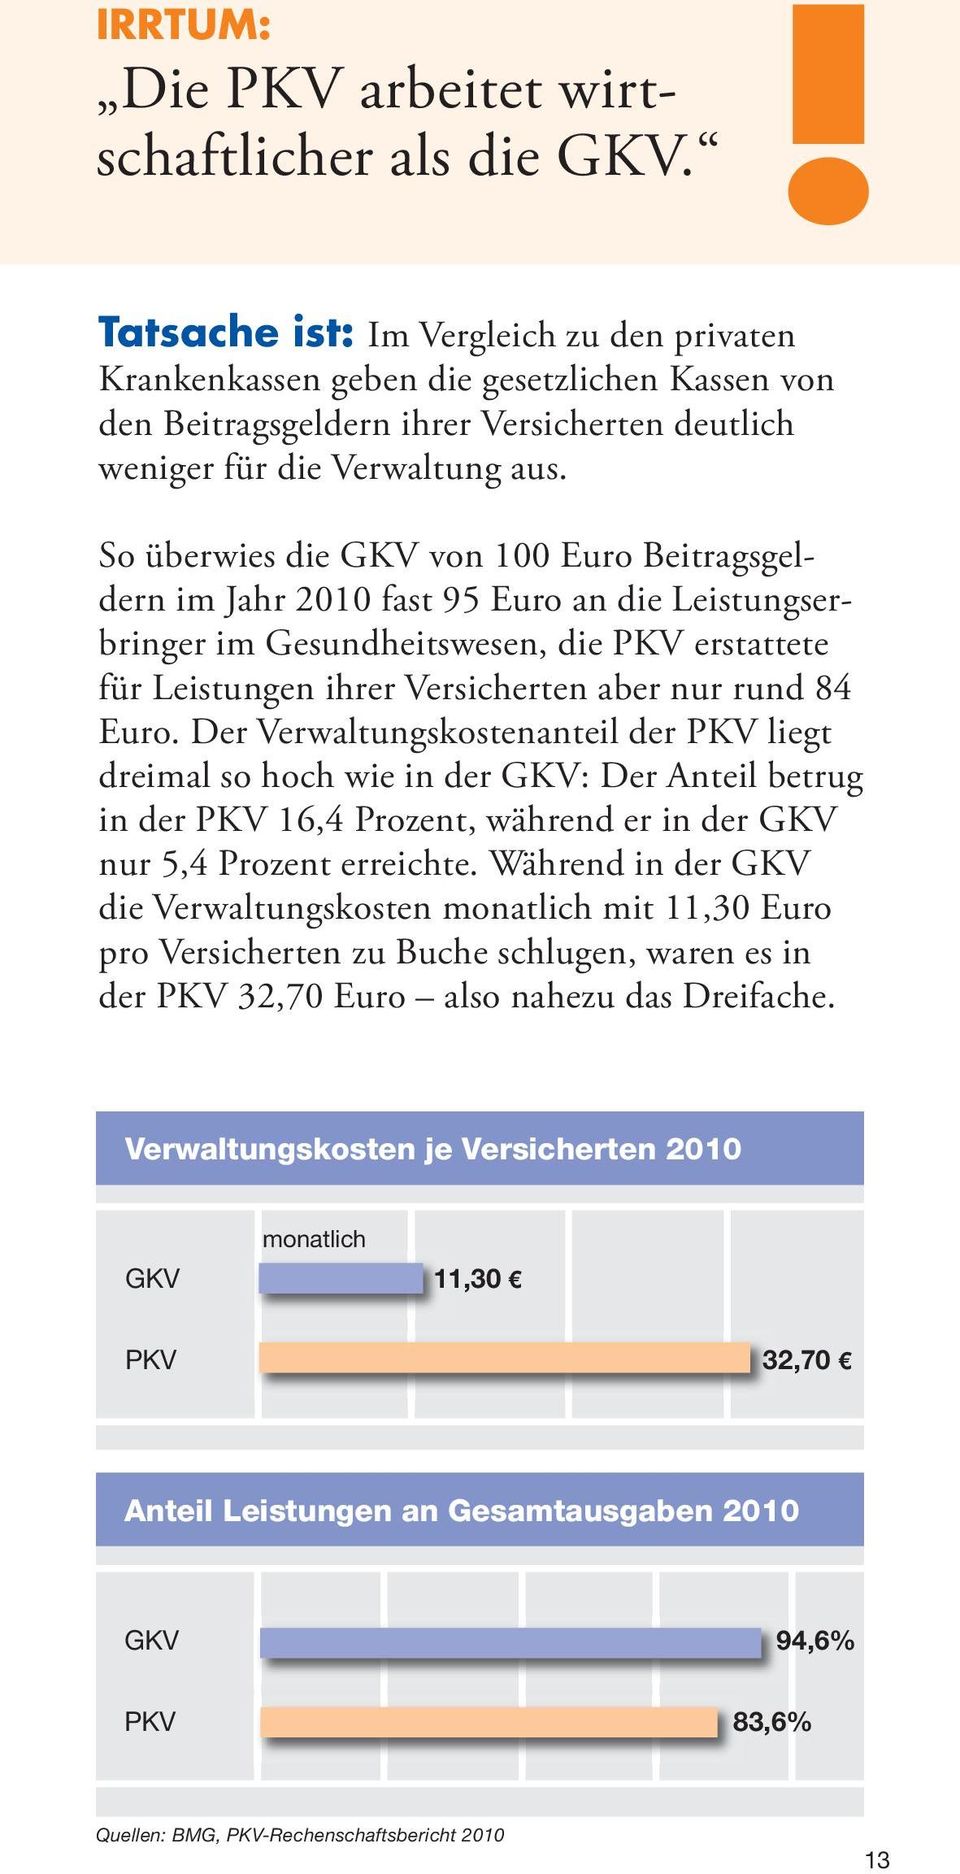 So überwies die GKV von 100 Euro Beitragsgeldern im Jahr 2010 fast 95 Euro an die Leistungserbringer im Gesundheitswesen, die PKV erstattete für Leistungen ihrer Versicherten aber nur rund 84 Euro.